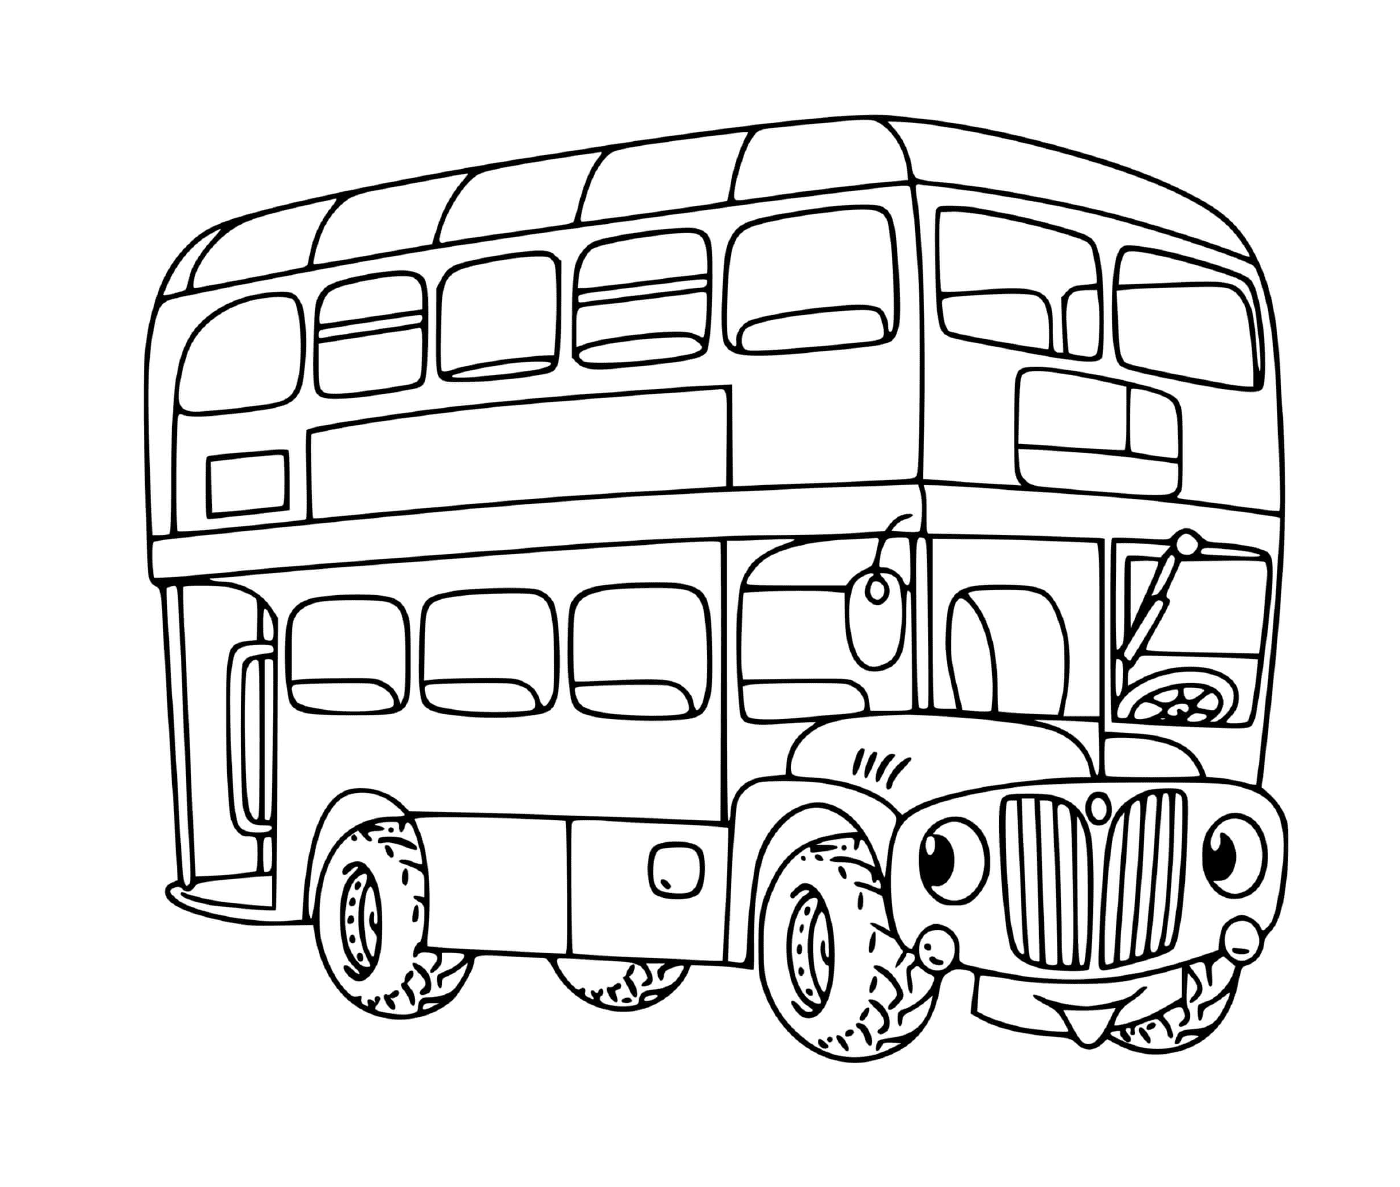  双级儿童公共汽车 